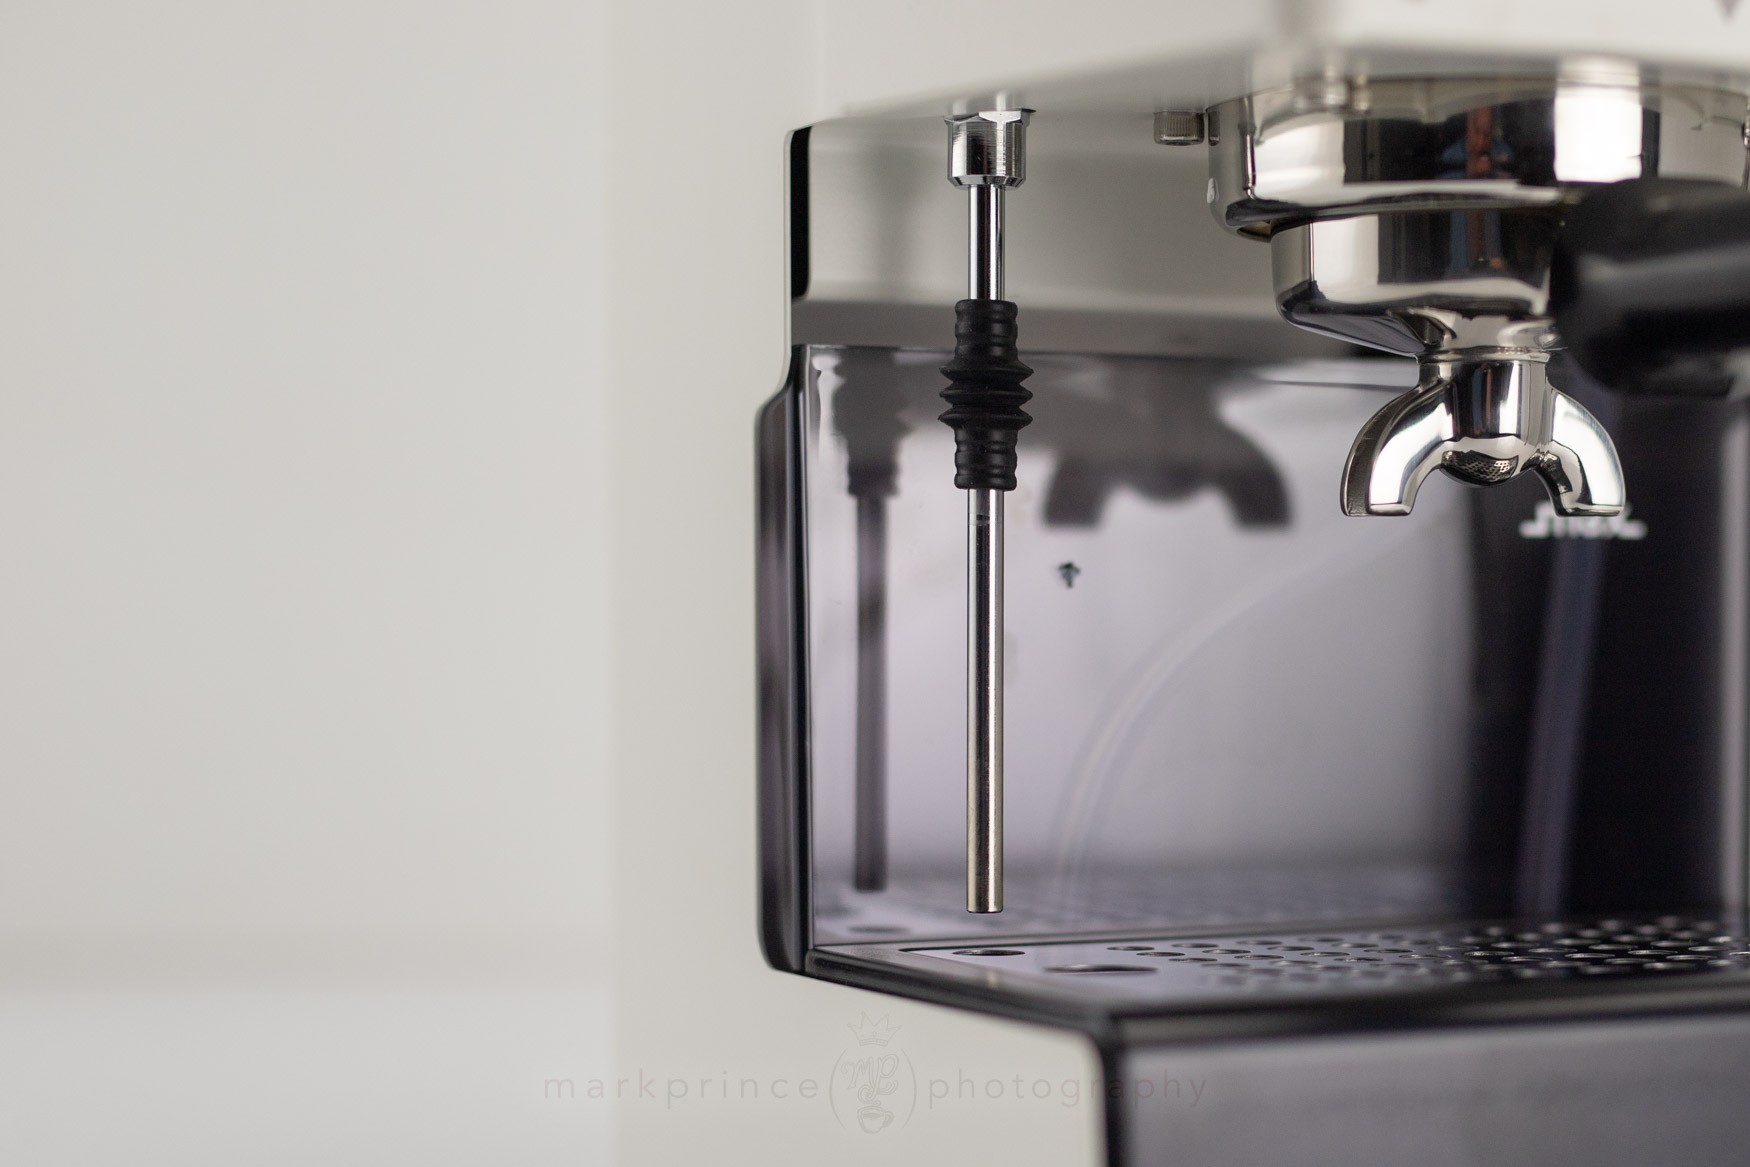 Gaggia New Classic RI9480/16 Espresso Coffee Machine – Grey